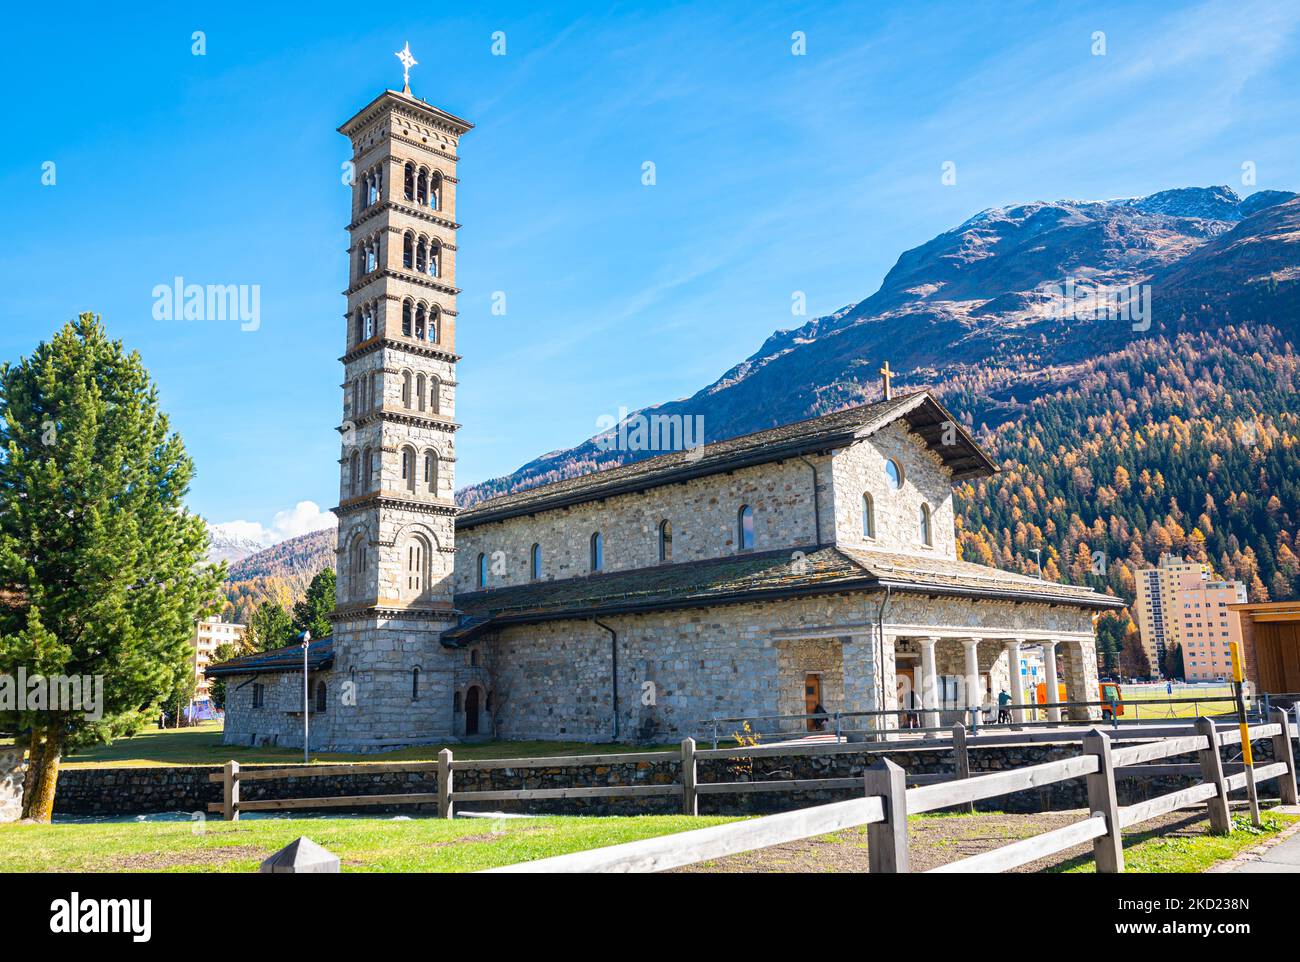 Blick auf die katholische Kirche St. Karl Borromäus in der berühmten Stadt St. Moritz im Kanton Graubünden, Schweiz. Stockfoto